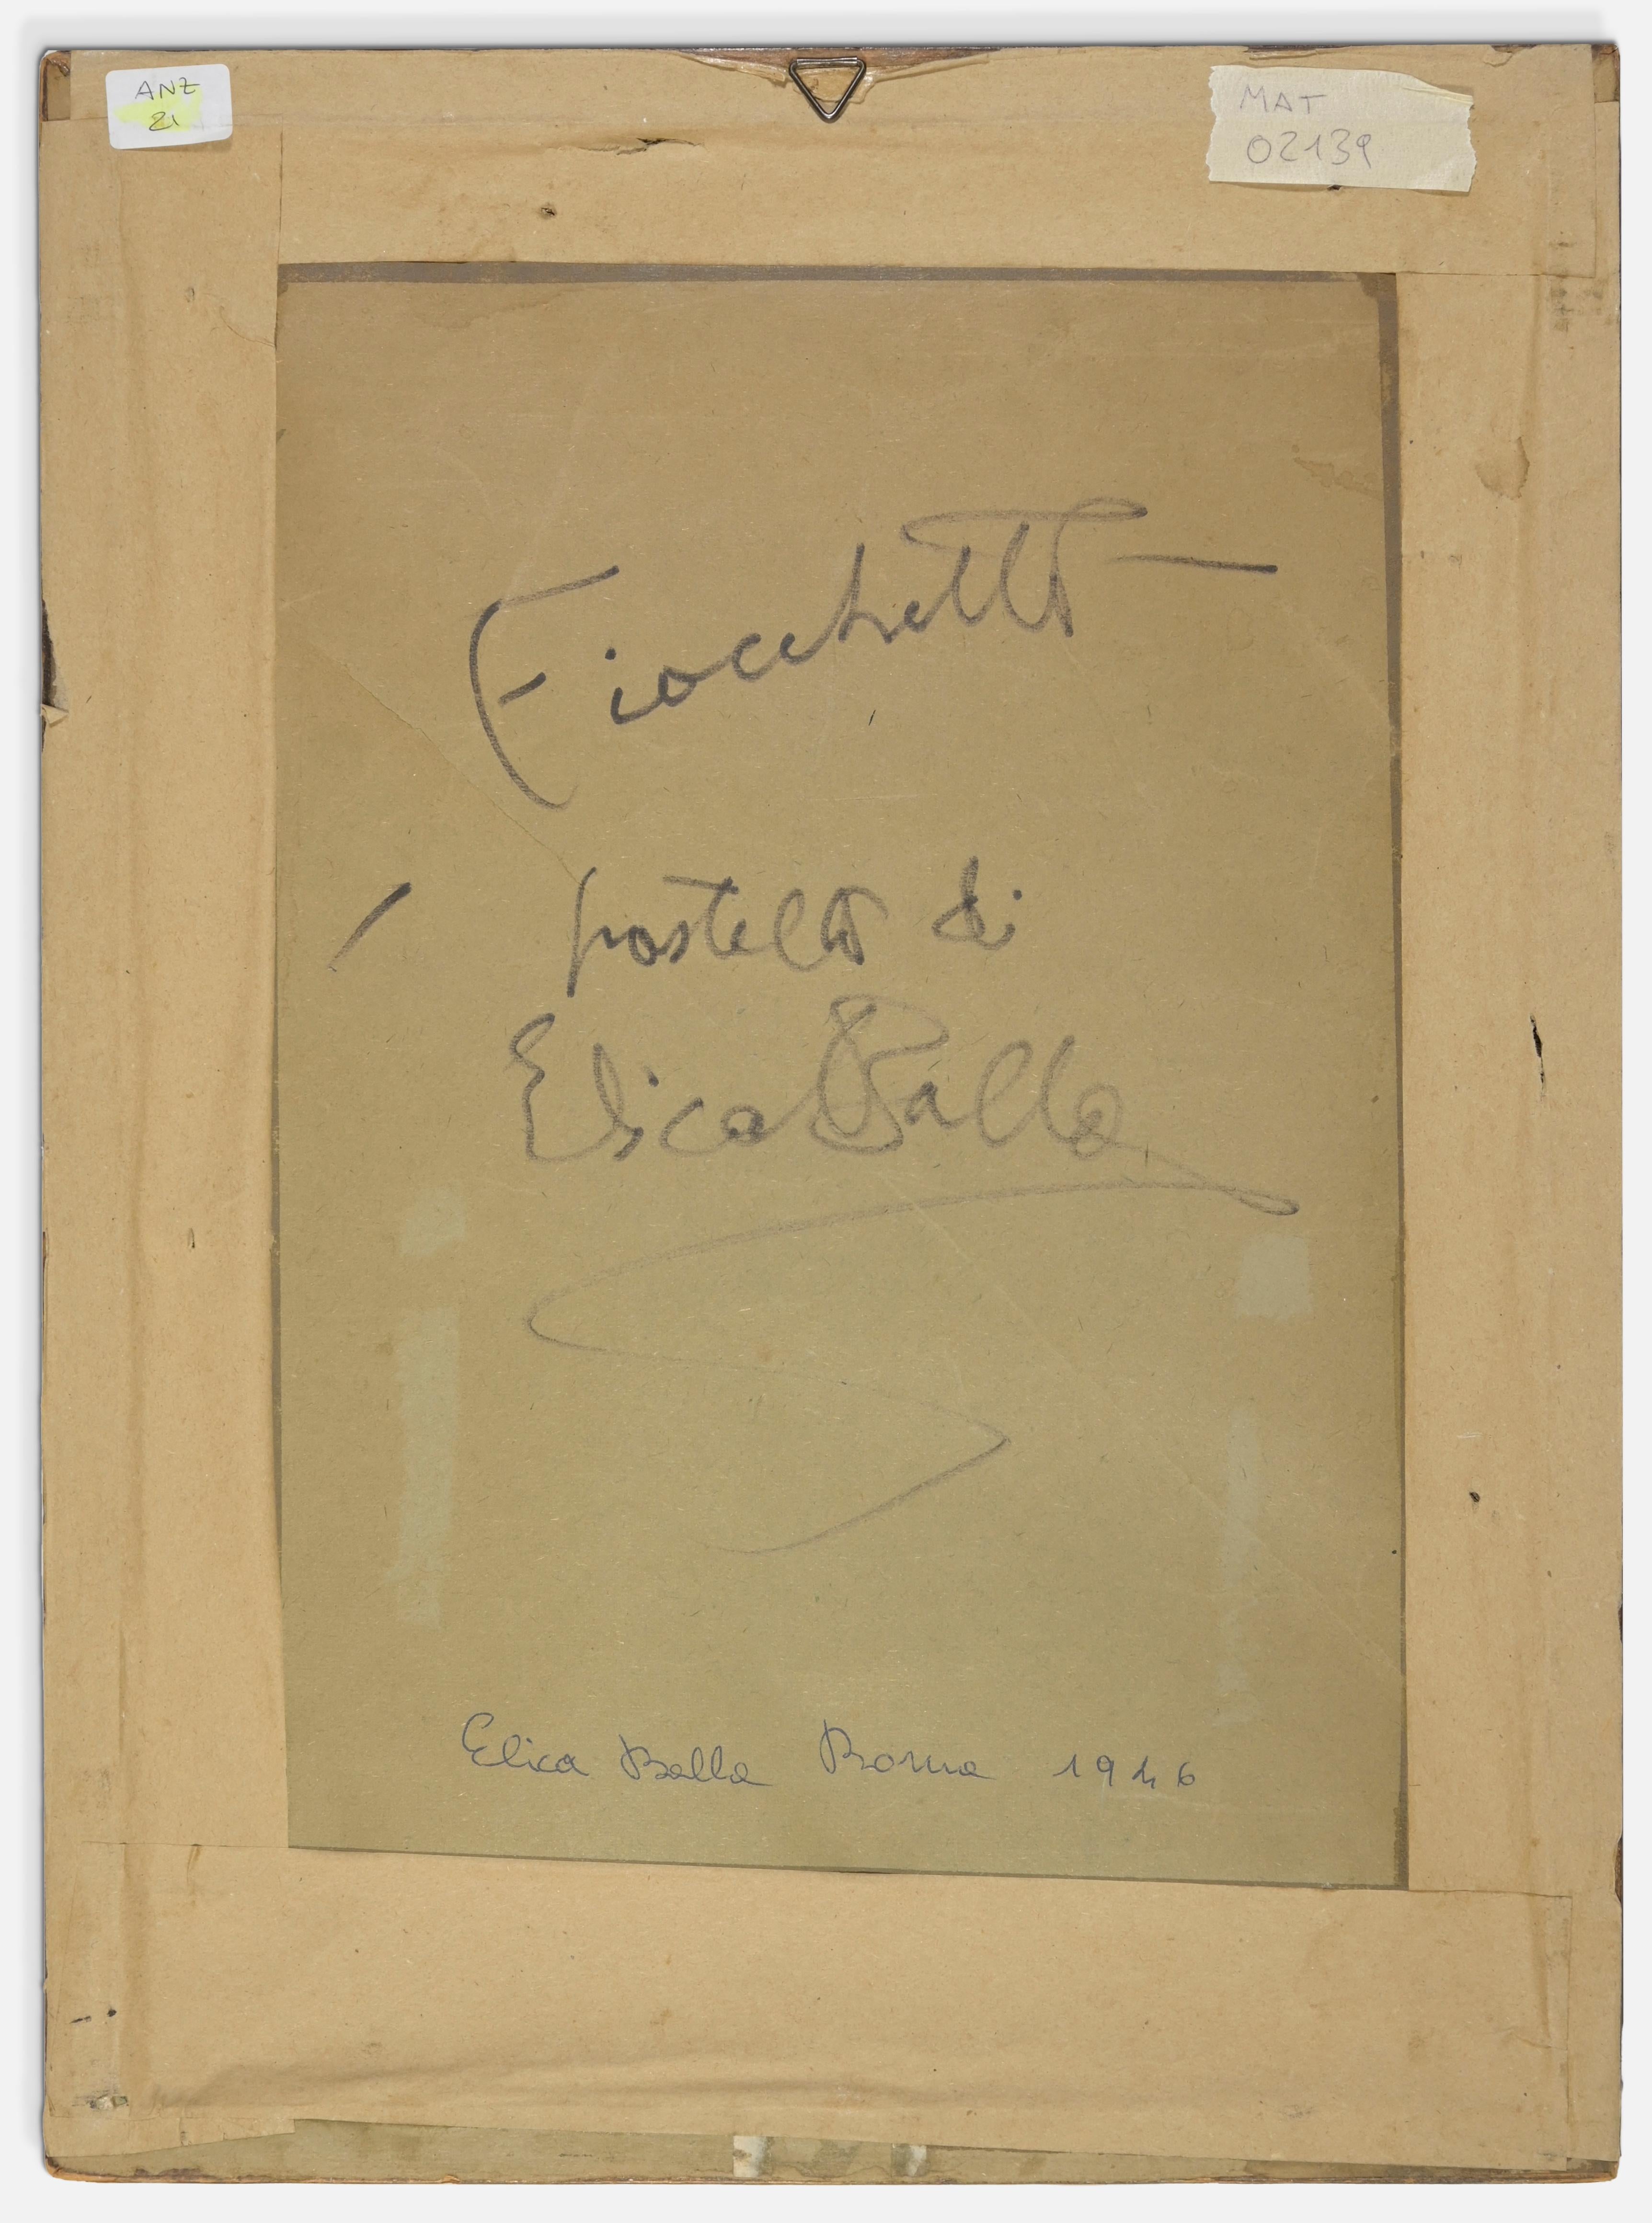 Fiocchetto ist ein Kunstwerk von Elica Balla (Rom, 1914 - 1993)

Handsigniert unten rechts.

Rückseitig handsigniert und betitelt.

Gute Bedingungen!